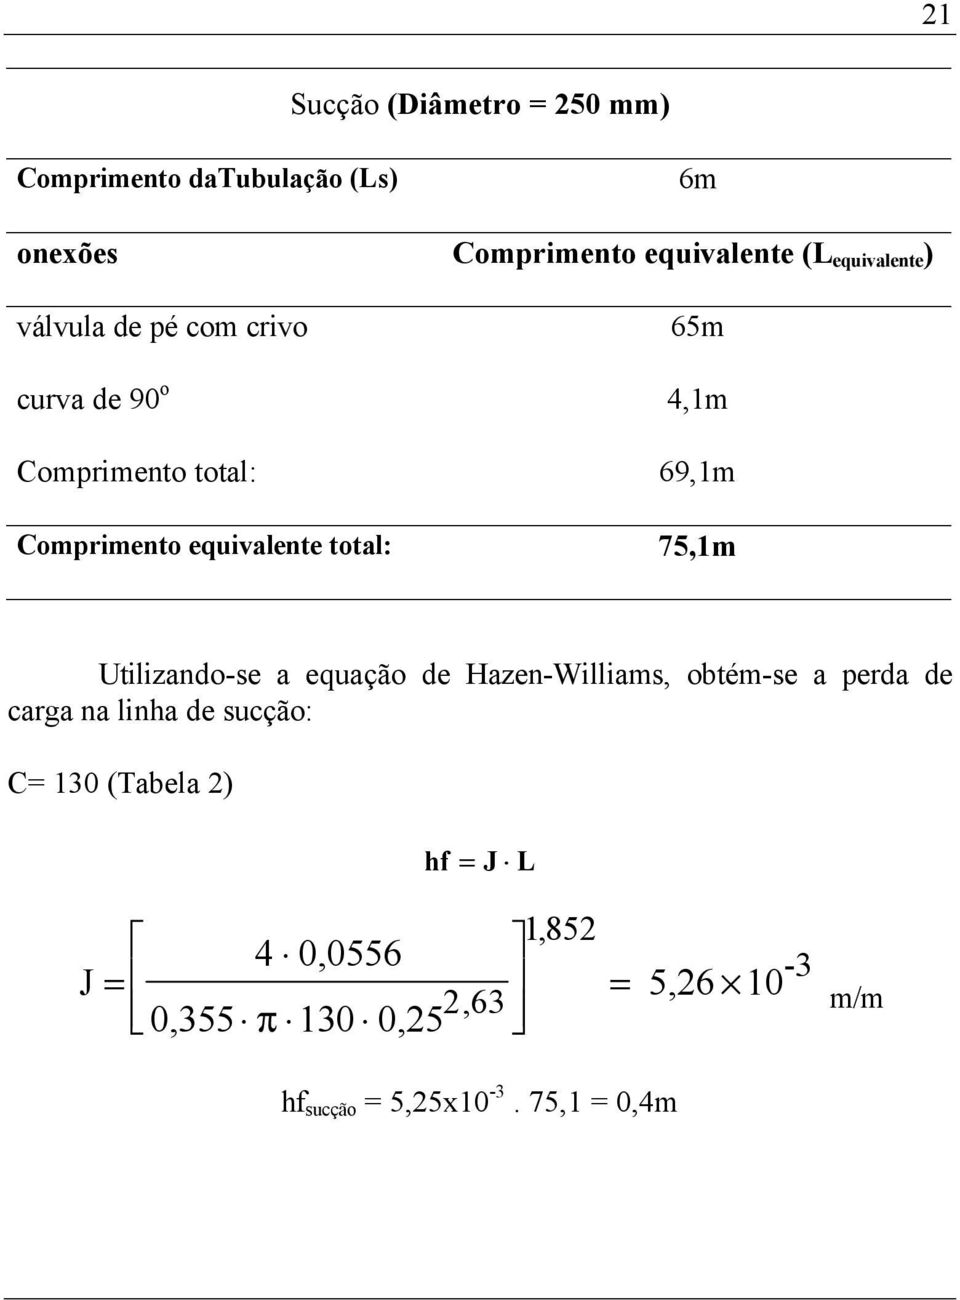 equivalente total: 75,1m Utilizando-se a equação de Hazen-Williams, obtém-se a perda de carga na linha de